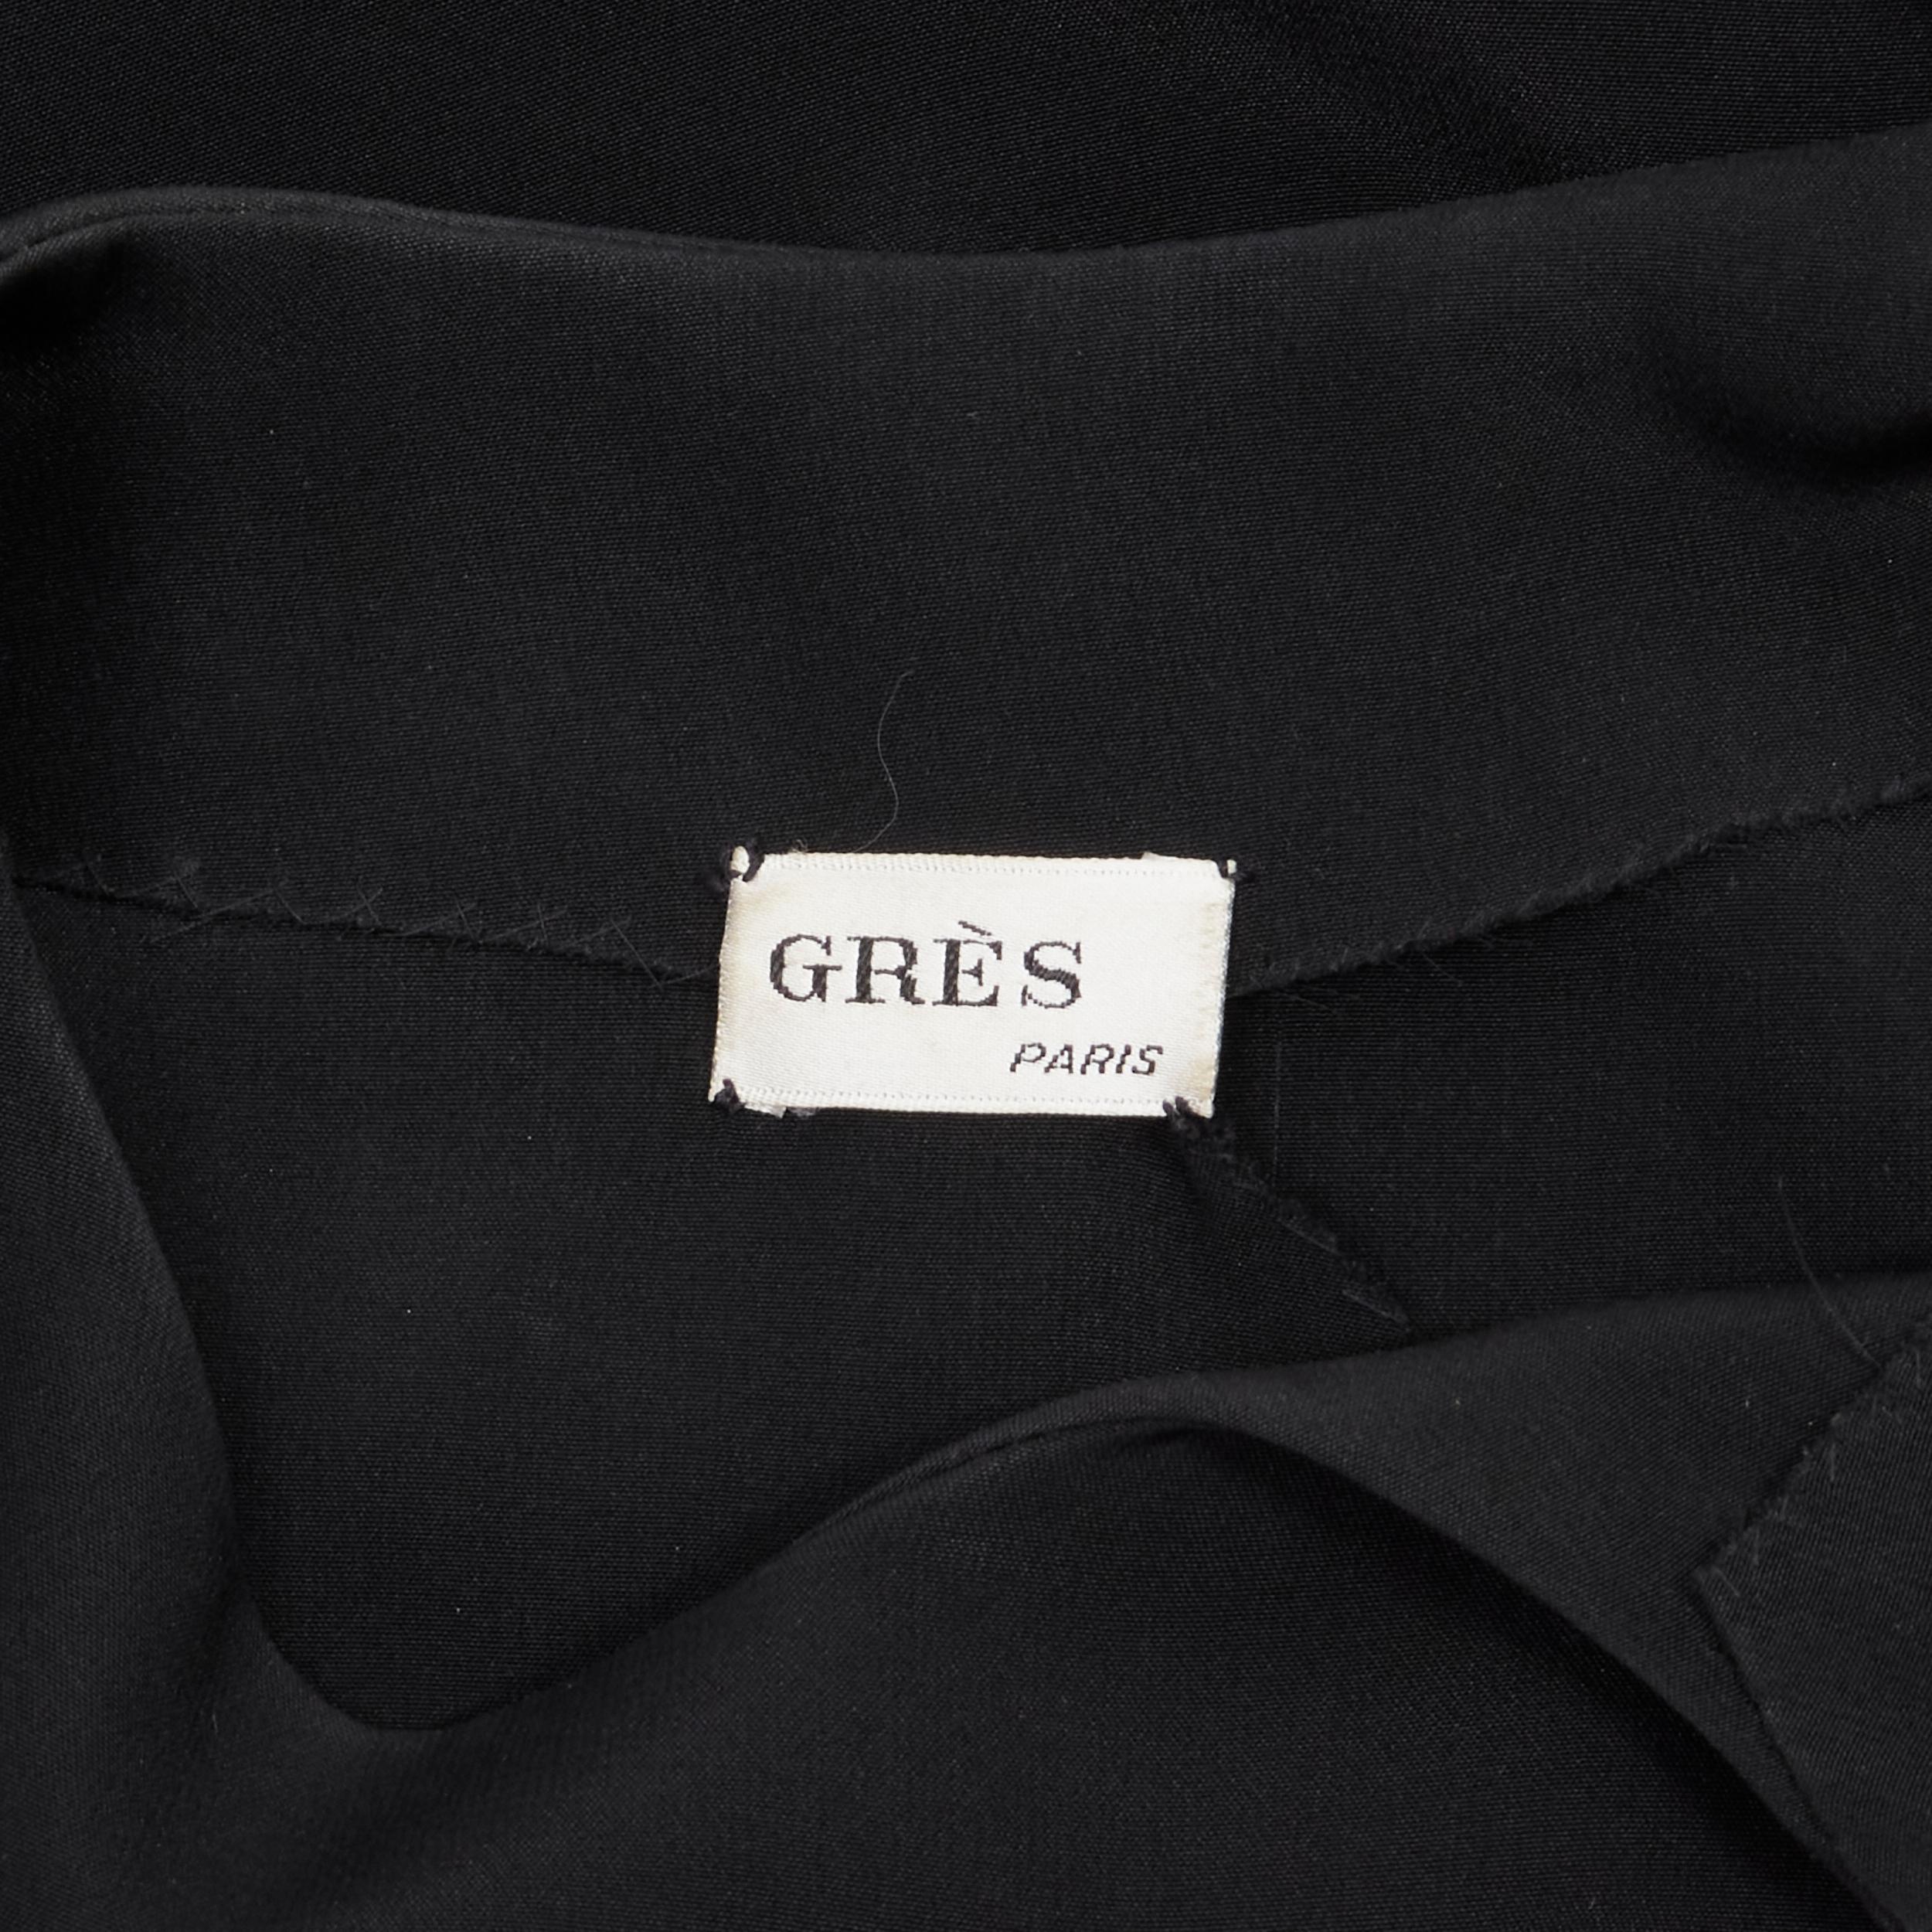 MADAME GRES Haute Couture Paris 1972 black crepe slash slit cut out dress M For Sale 5